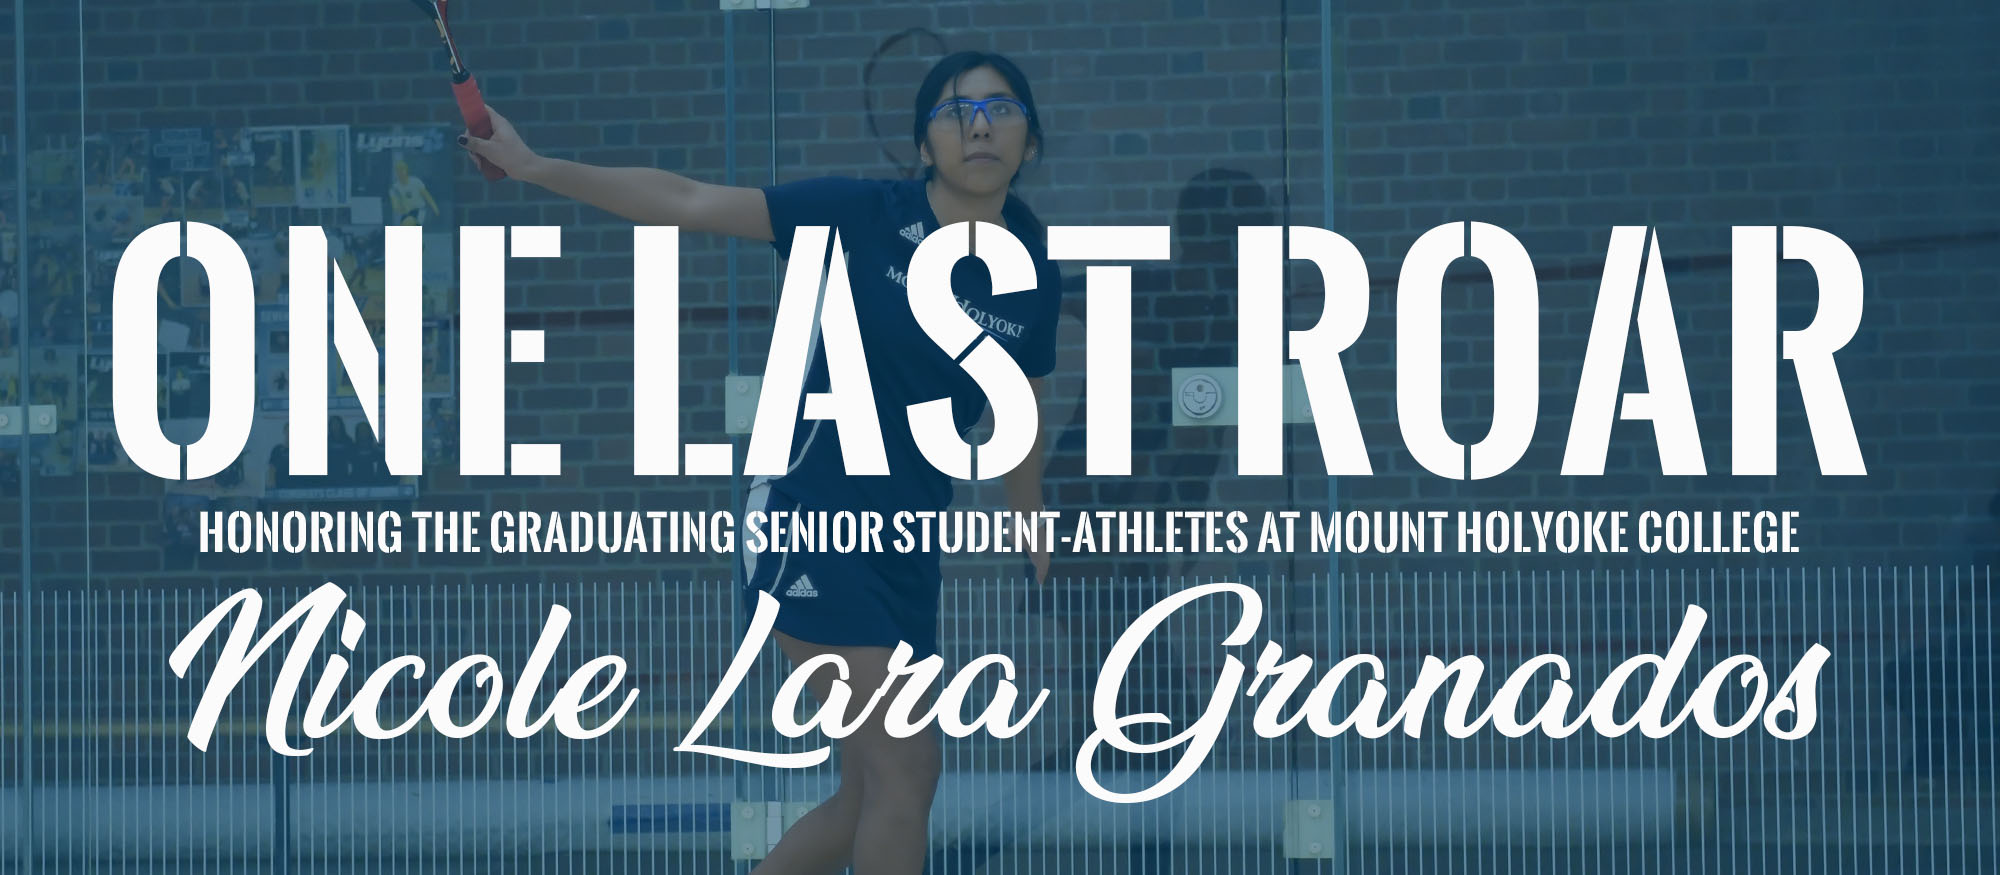 One Last Roar: Nicole Lara Granados, Squash